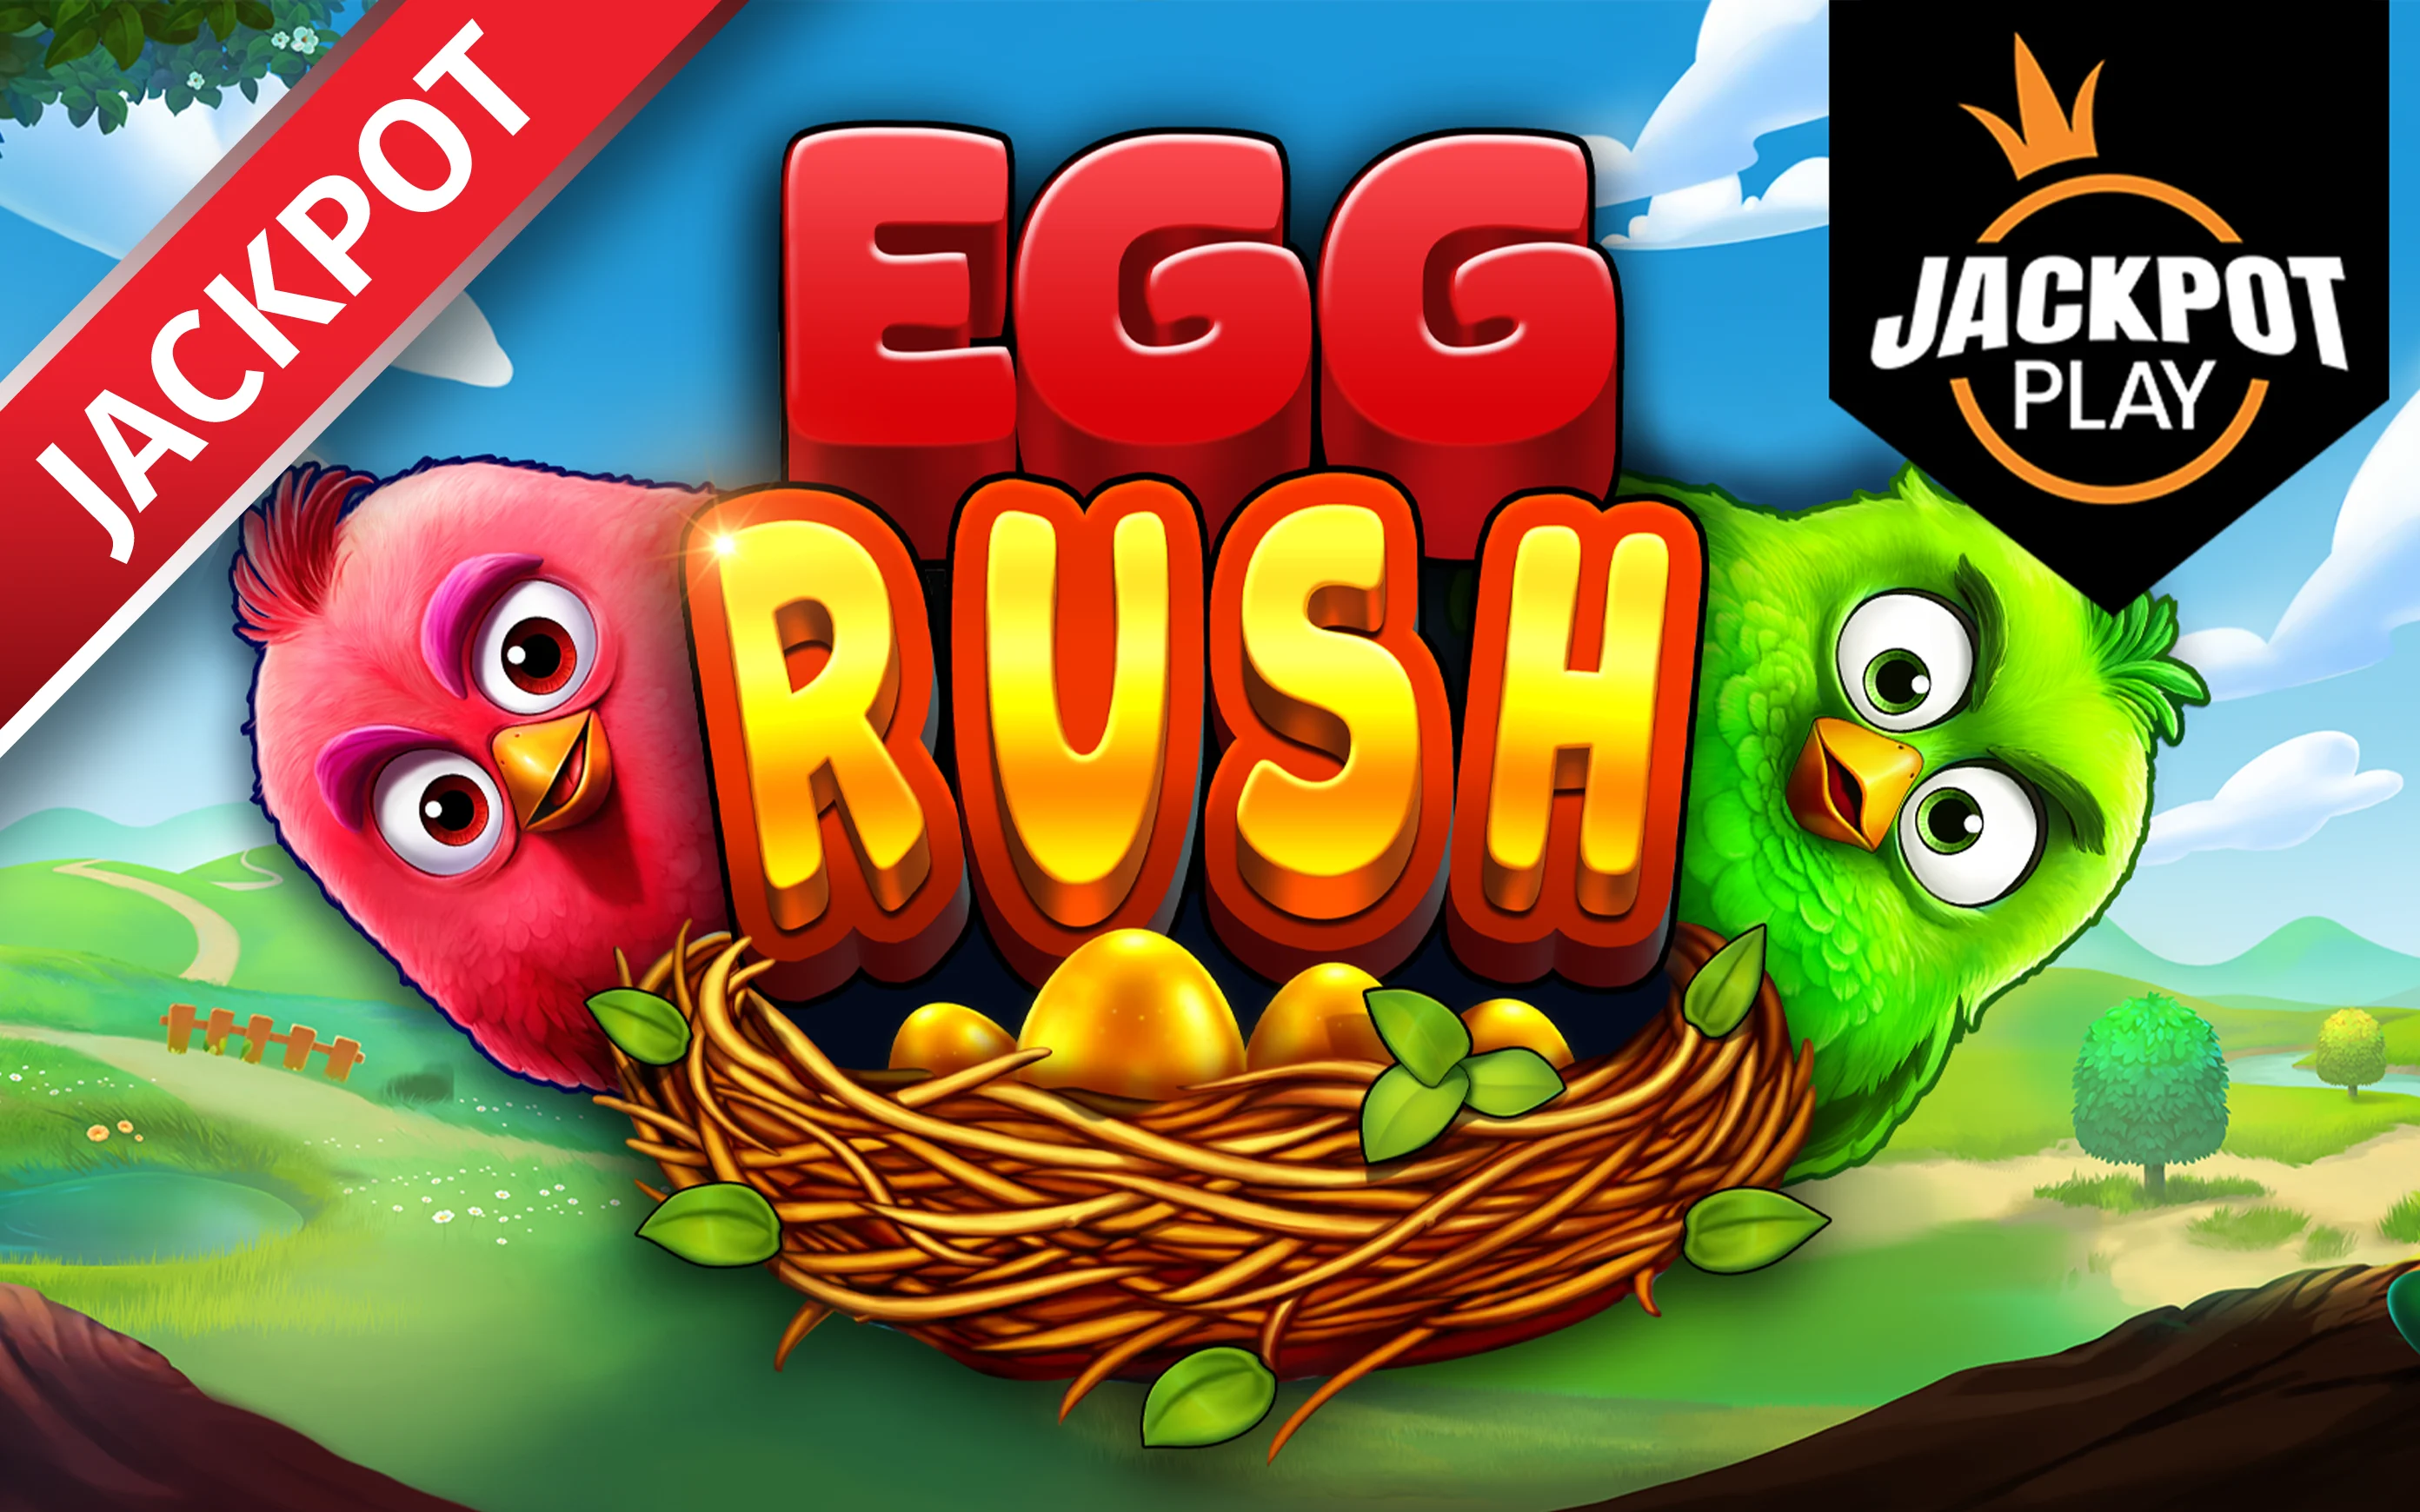 เล่น Egg Rush Jackpot Play บนคาสิโนออนไลน์ Starcasino.be